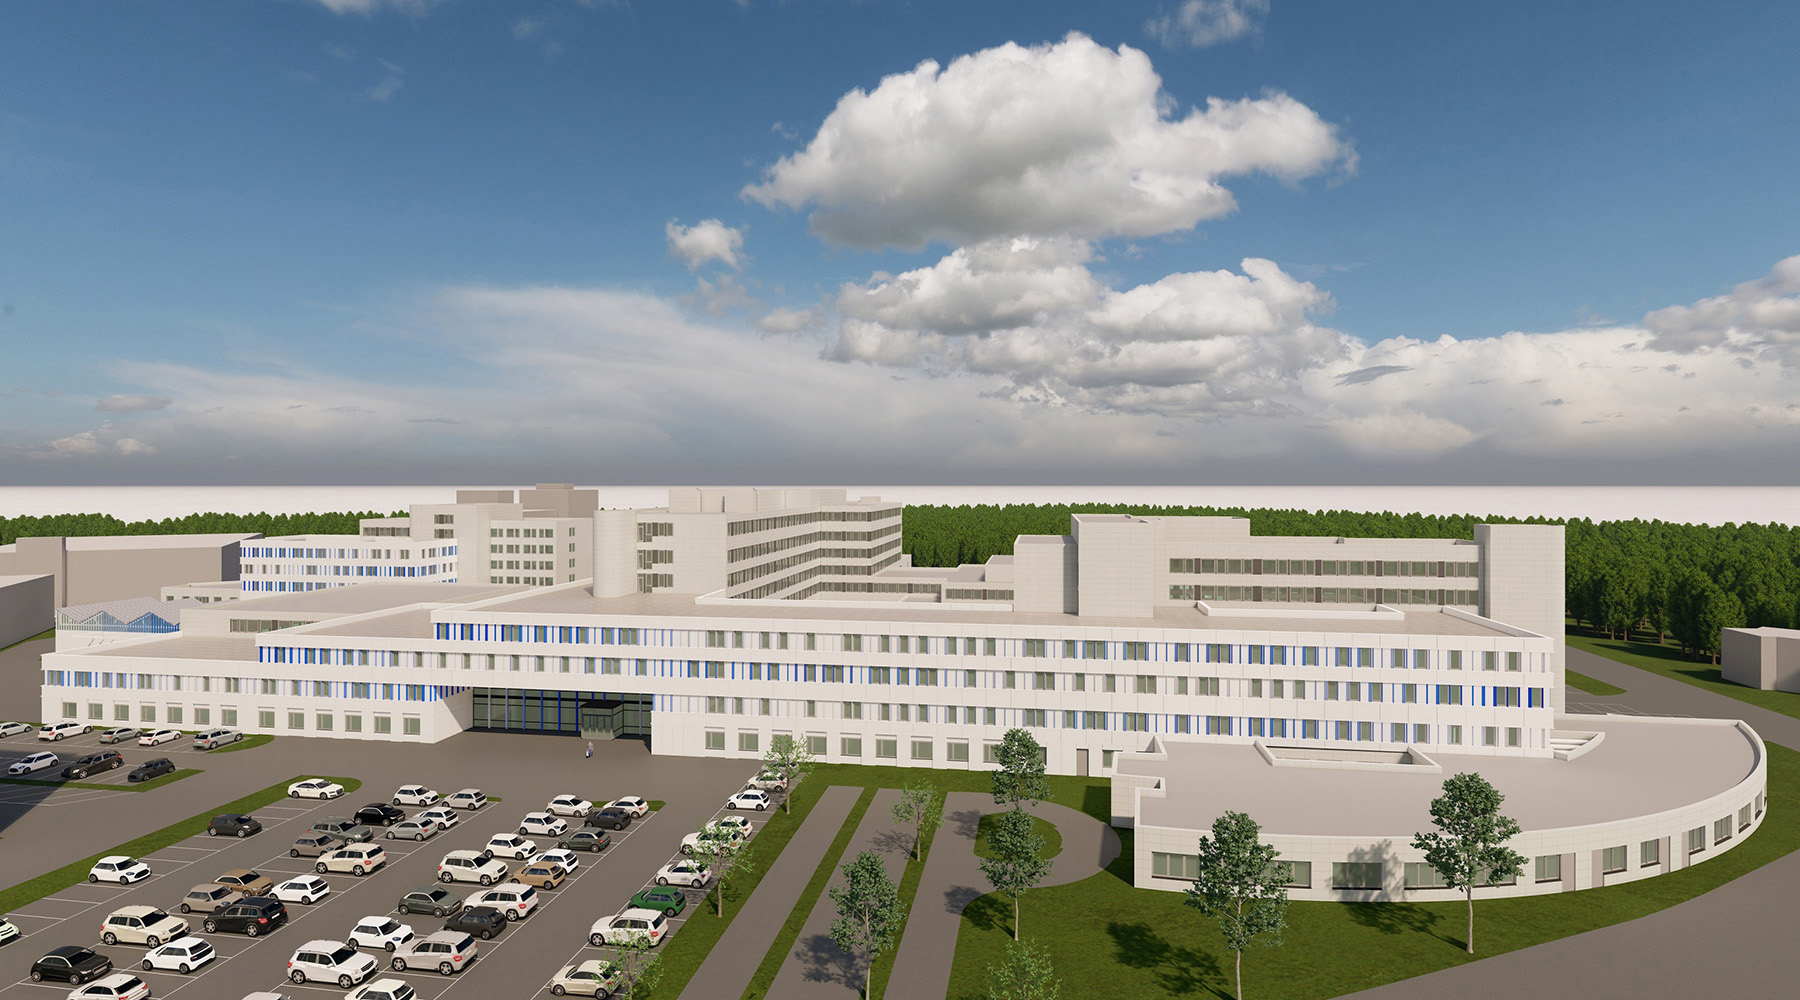 Machbarkeitsstudie/Zielplanung für die Sana Kliniken in Duisburg. 3D-Modell. Sehr breites Gebäude mit weißer Fassade, Eingangsbereich mit Fensterfront. Rechtes Erdgeschoss hat einen rund gebauten Flügel.